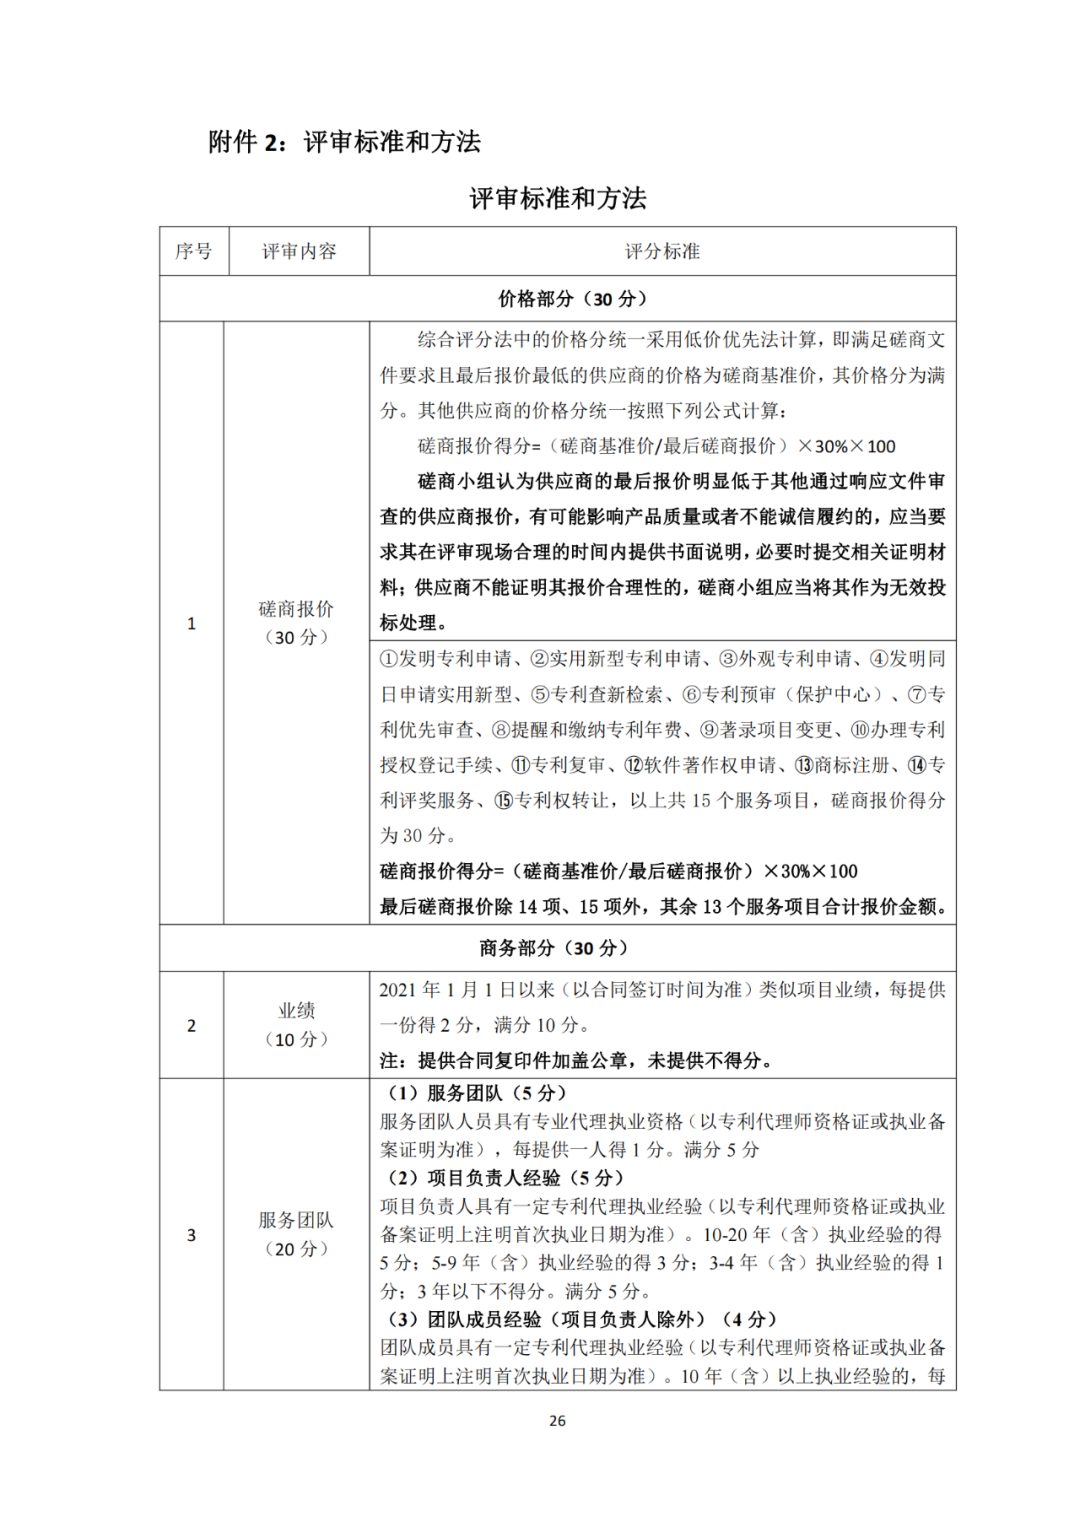 发明专利4980元，实用新型1800元，外观500元，上海一研究院采购知识产权代理成交公告